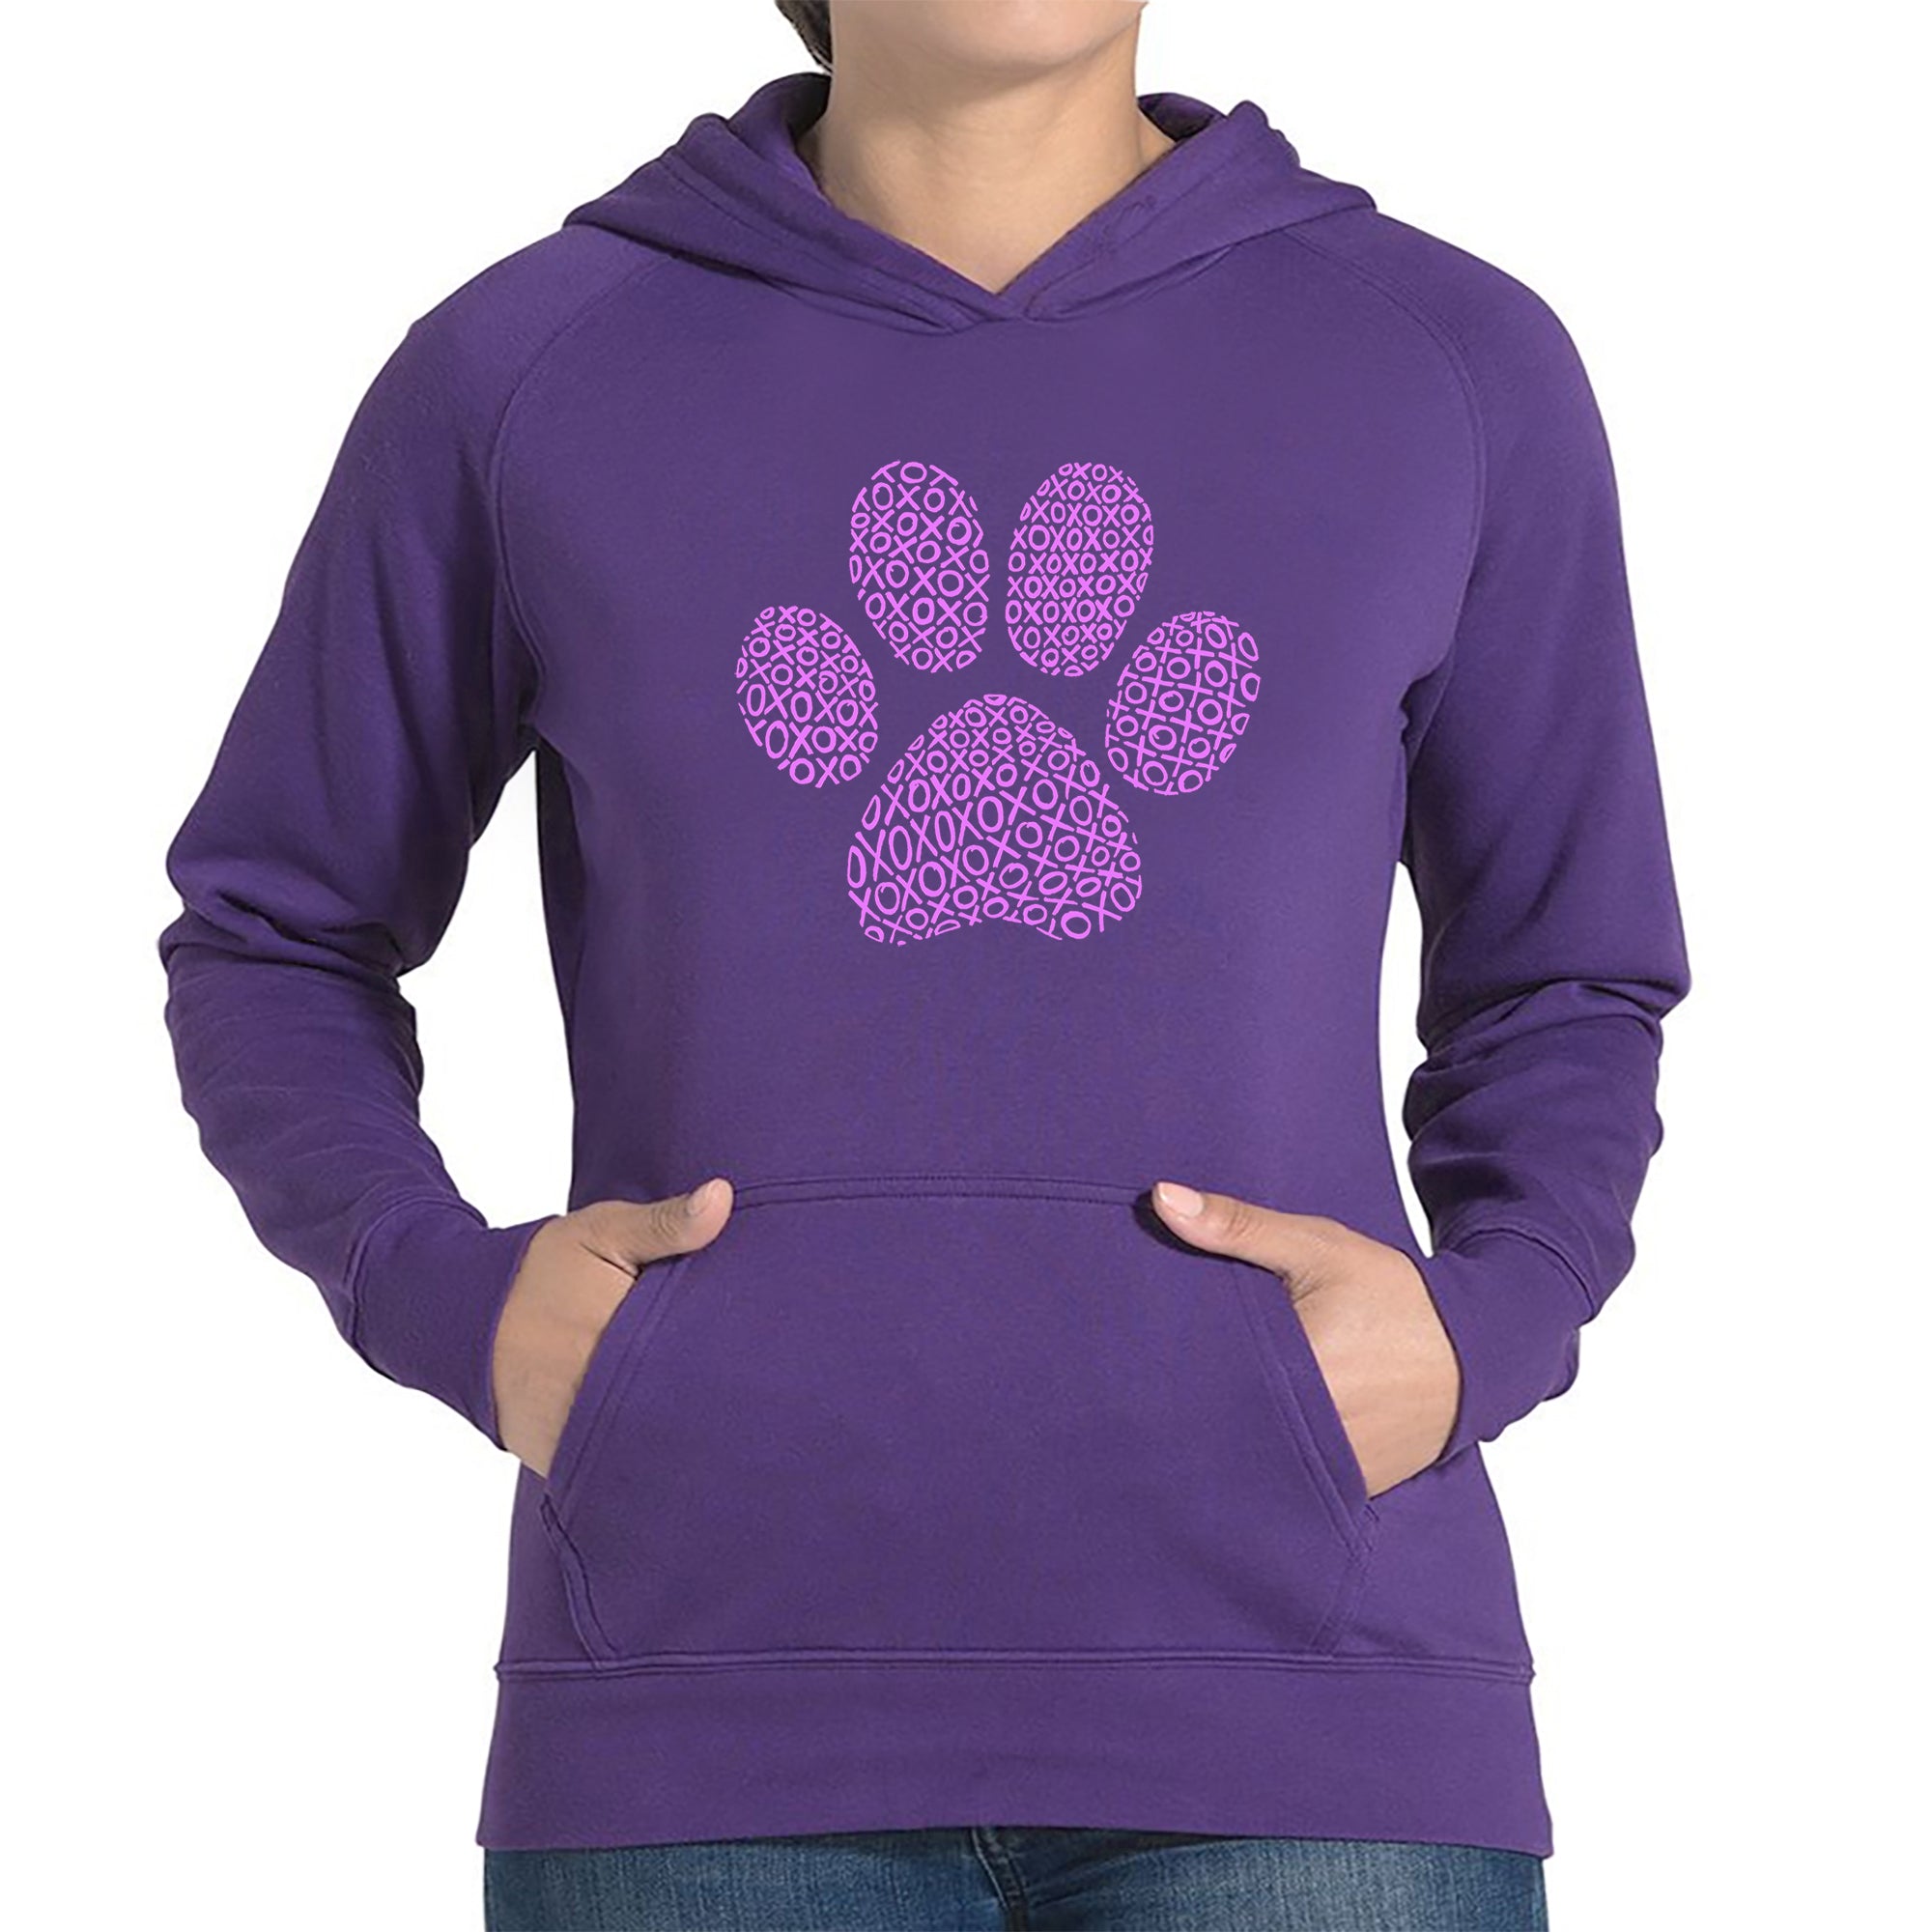 XOXO Dog Paw - Women's Word Art Hooded Sweatshirt - Purple - X-Large